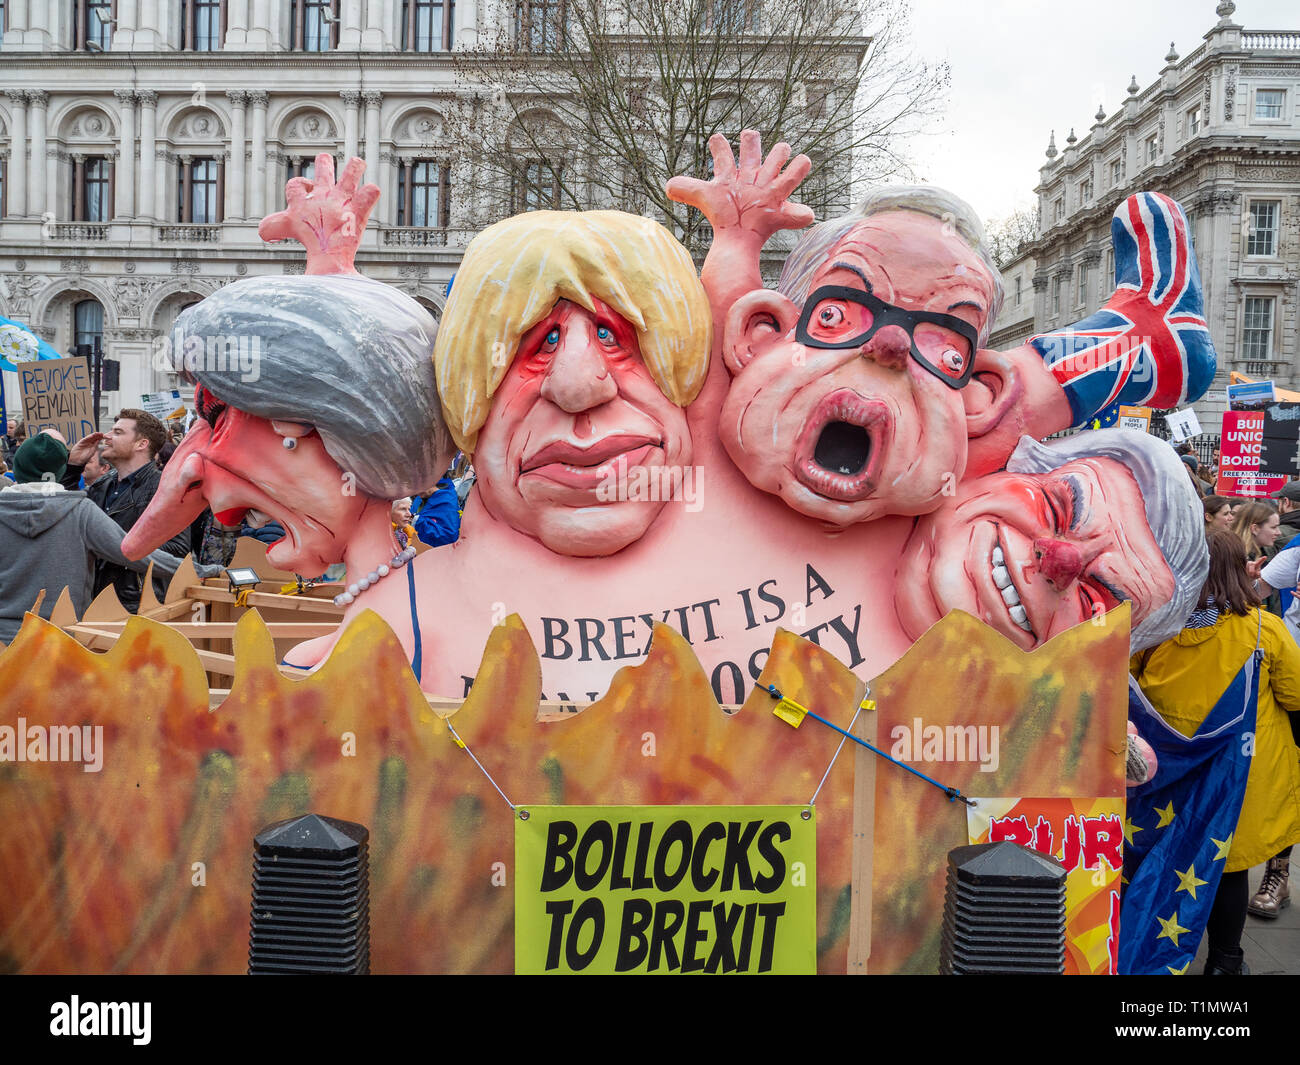 La Monstruosité Brexit flotter par Jacques Tilly sur le vote du peuple, 23 Mars 2019 Mars, Whitehall, Londres, UK Banque D'Images